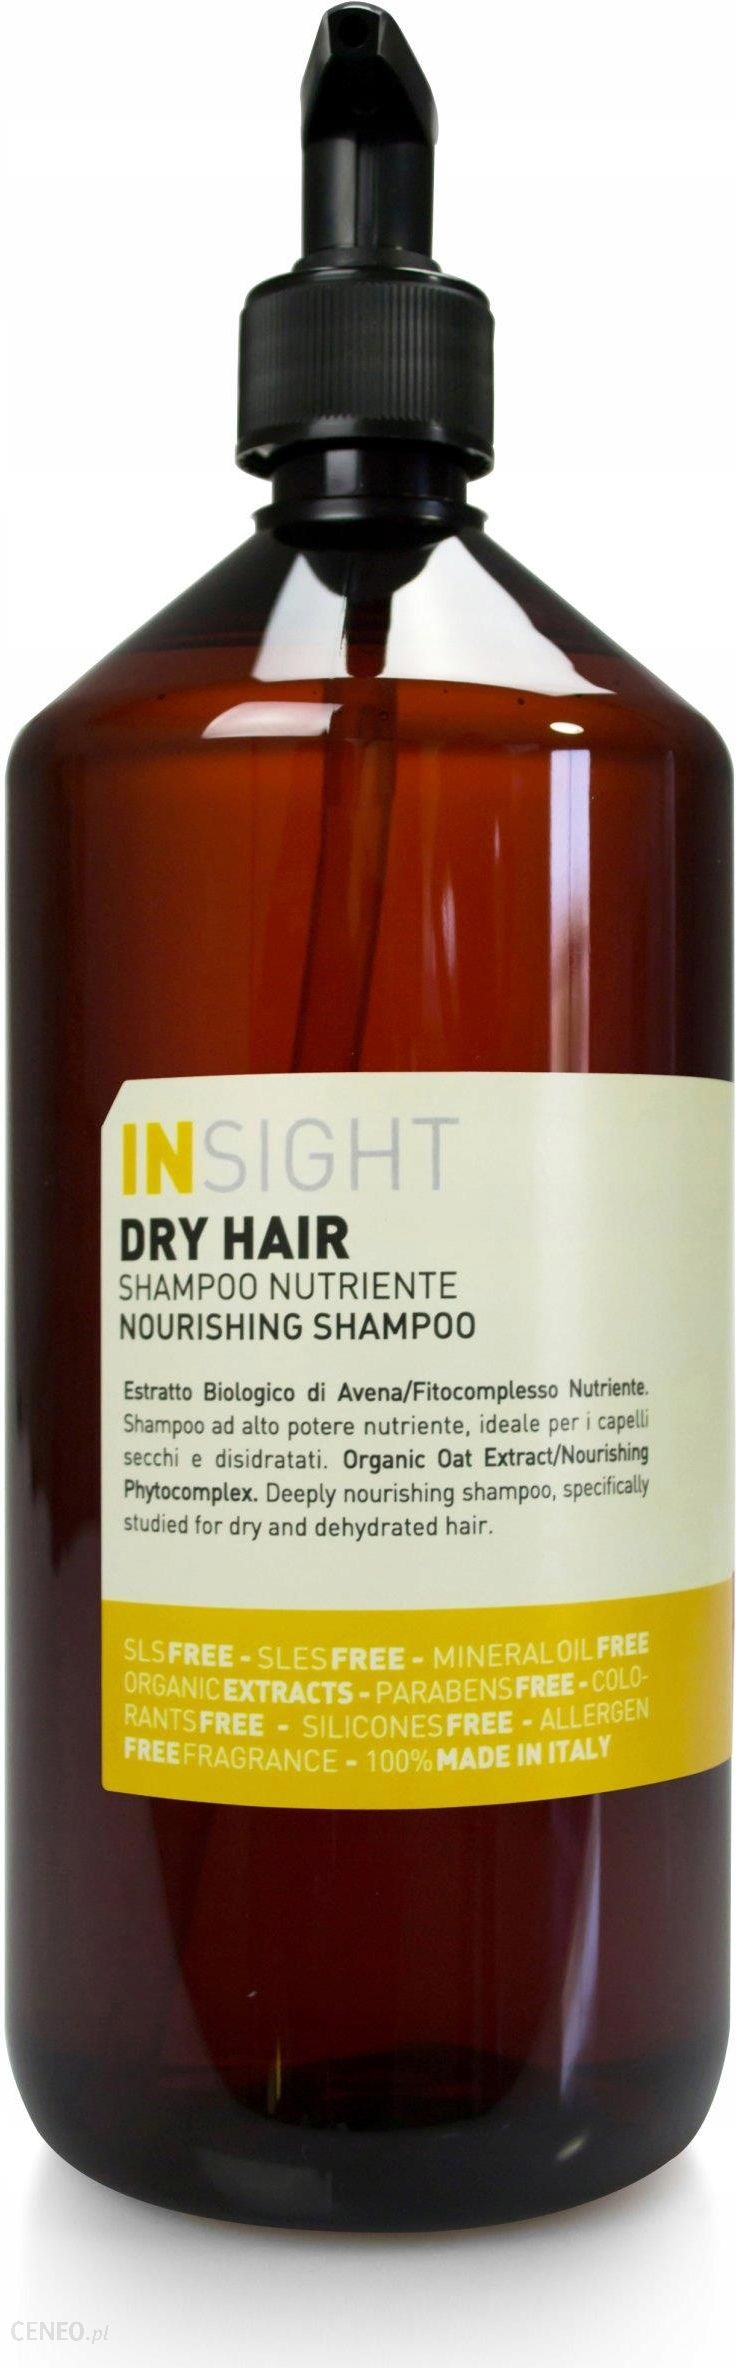 insight dry hair szampon do włosów suchych